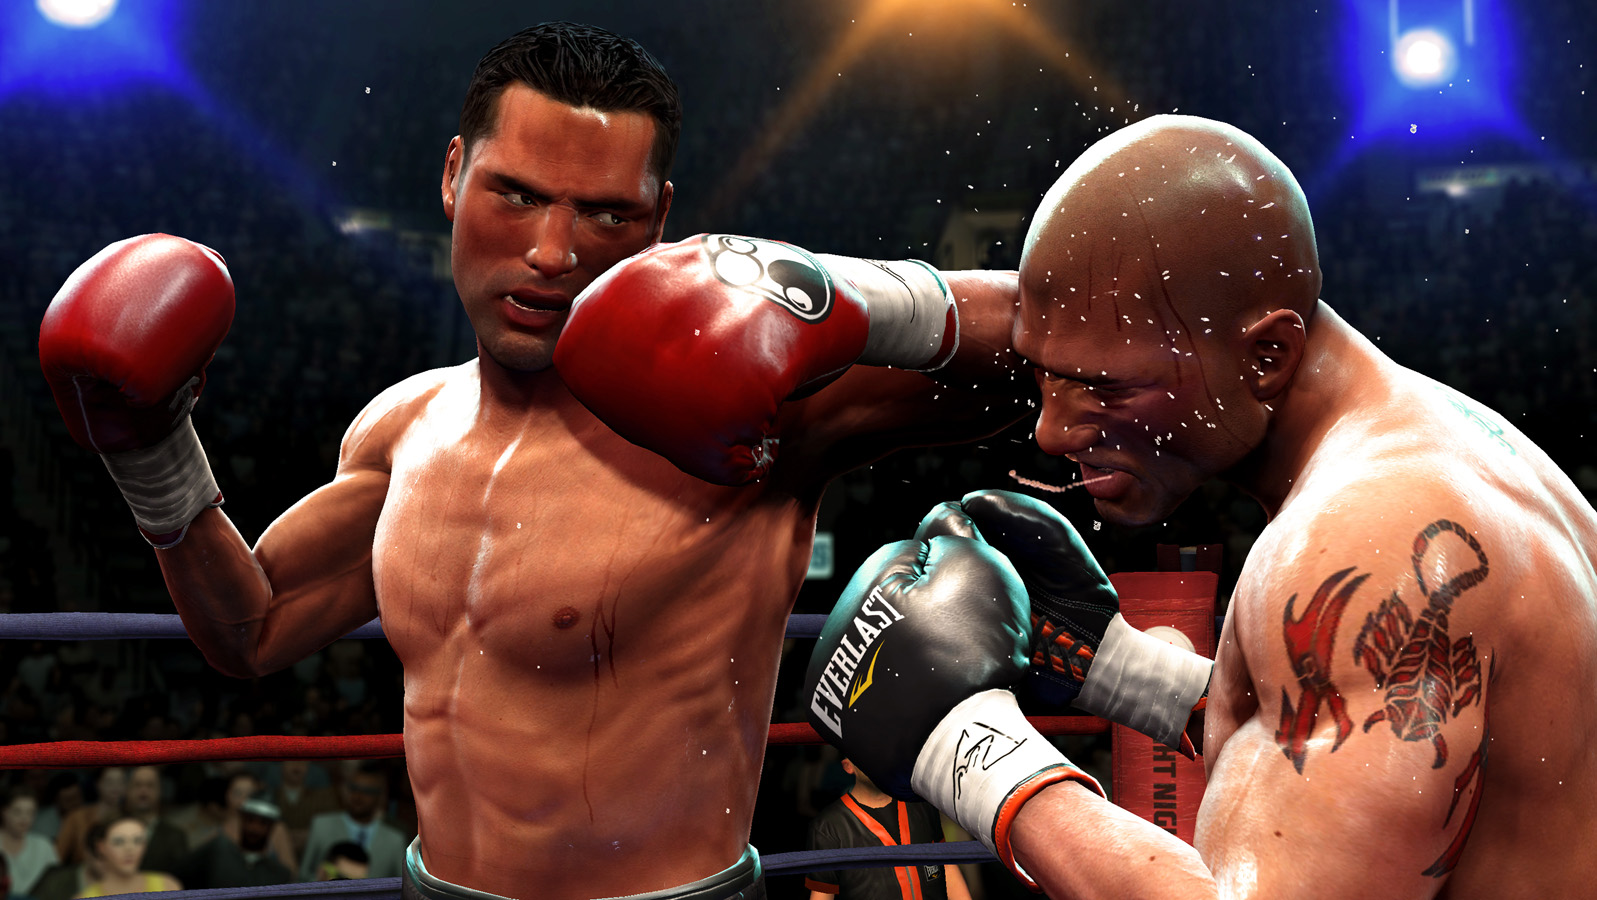 Видео 4 бокс. Fight Night Round 4 на ПК. Fight Night Round 4 Xbox 360 Classic. Fight Night Champion на ПК.